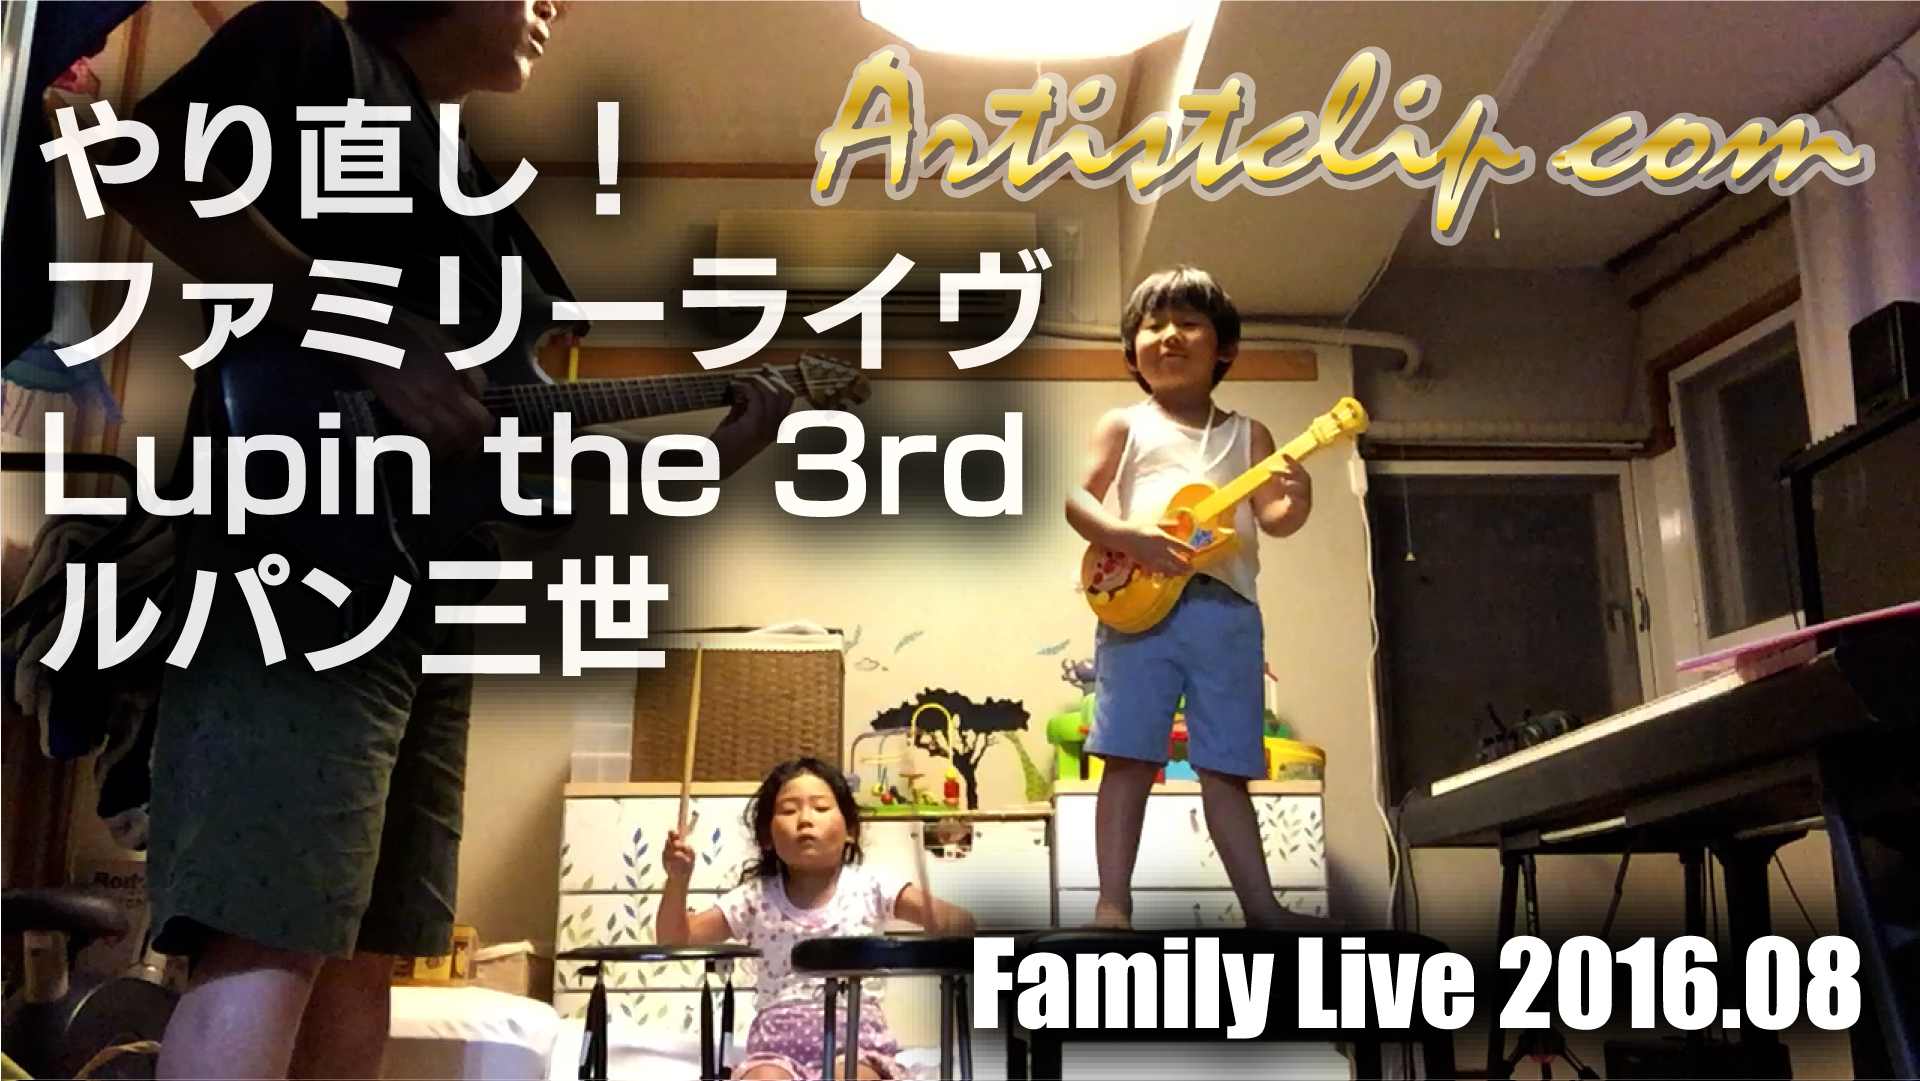 最近やってないなぁ♬　Family Live !!! with Kids 【Lupin the 3rd/ ルパン三世】2016.08.19